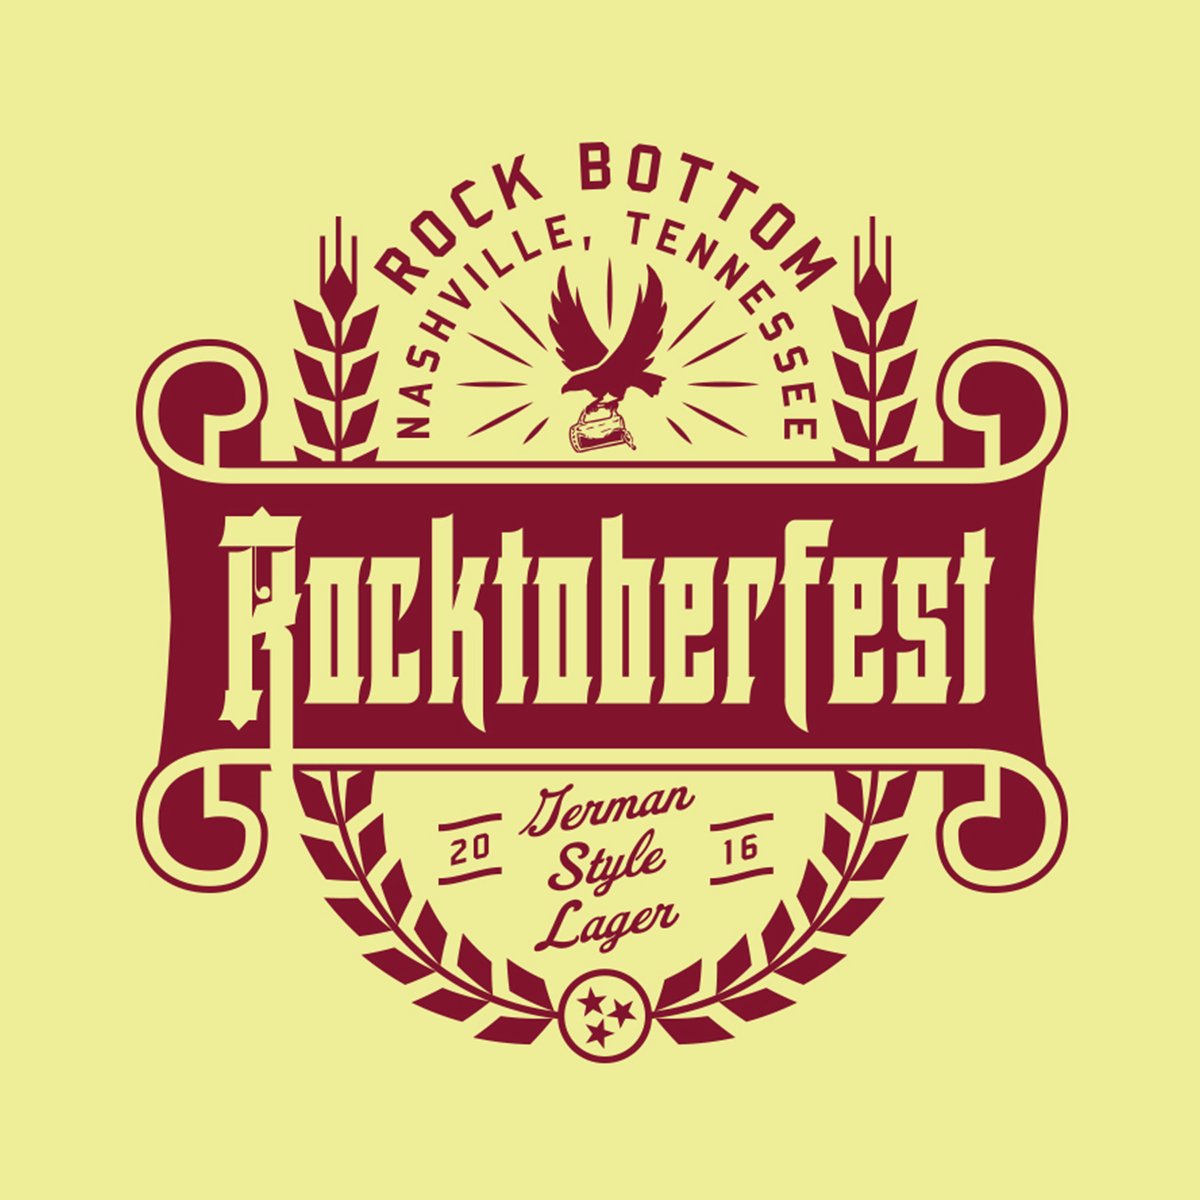 RB_Rocktoberfest_2016.jpg